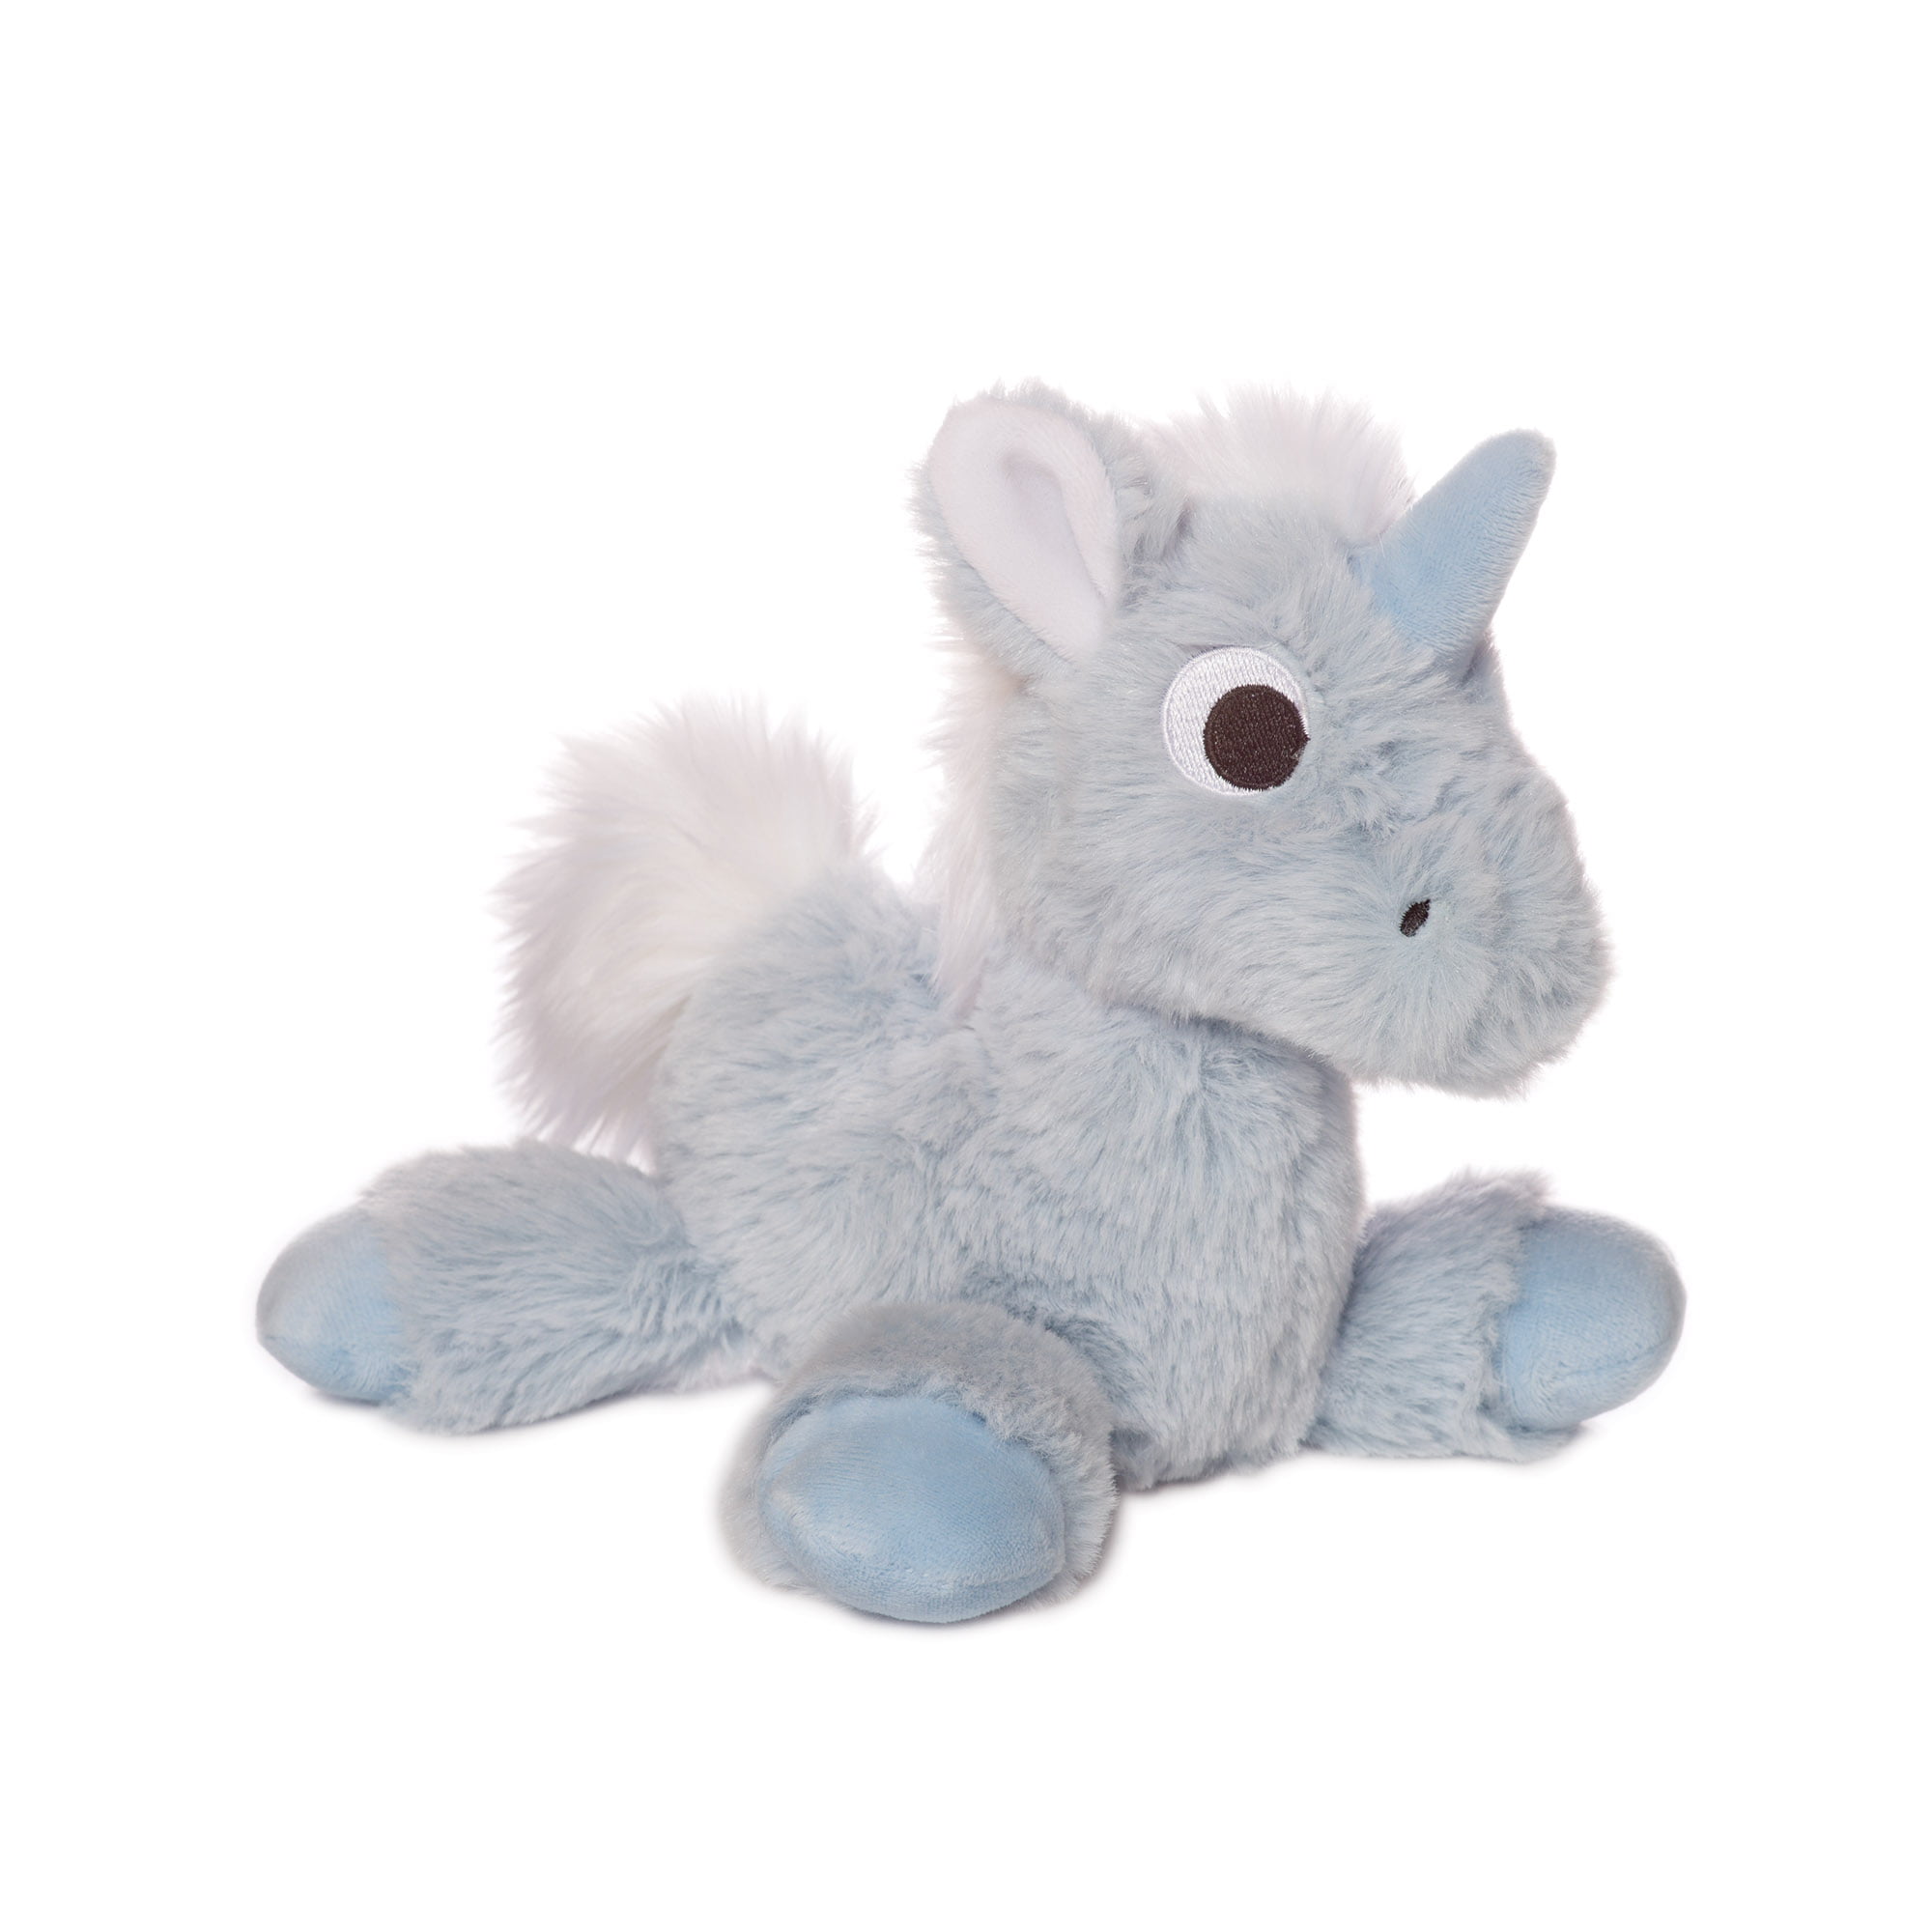 unicorn stuffed animal walmart